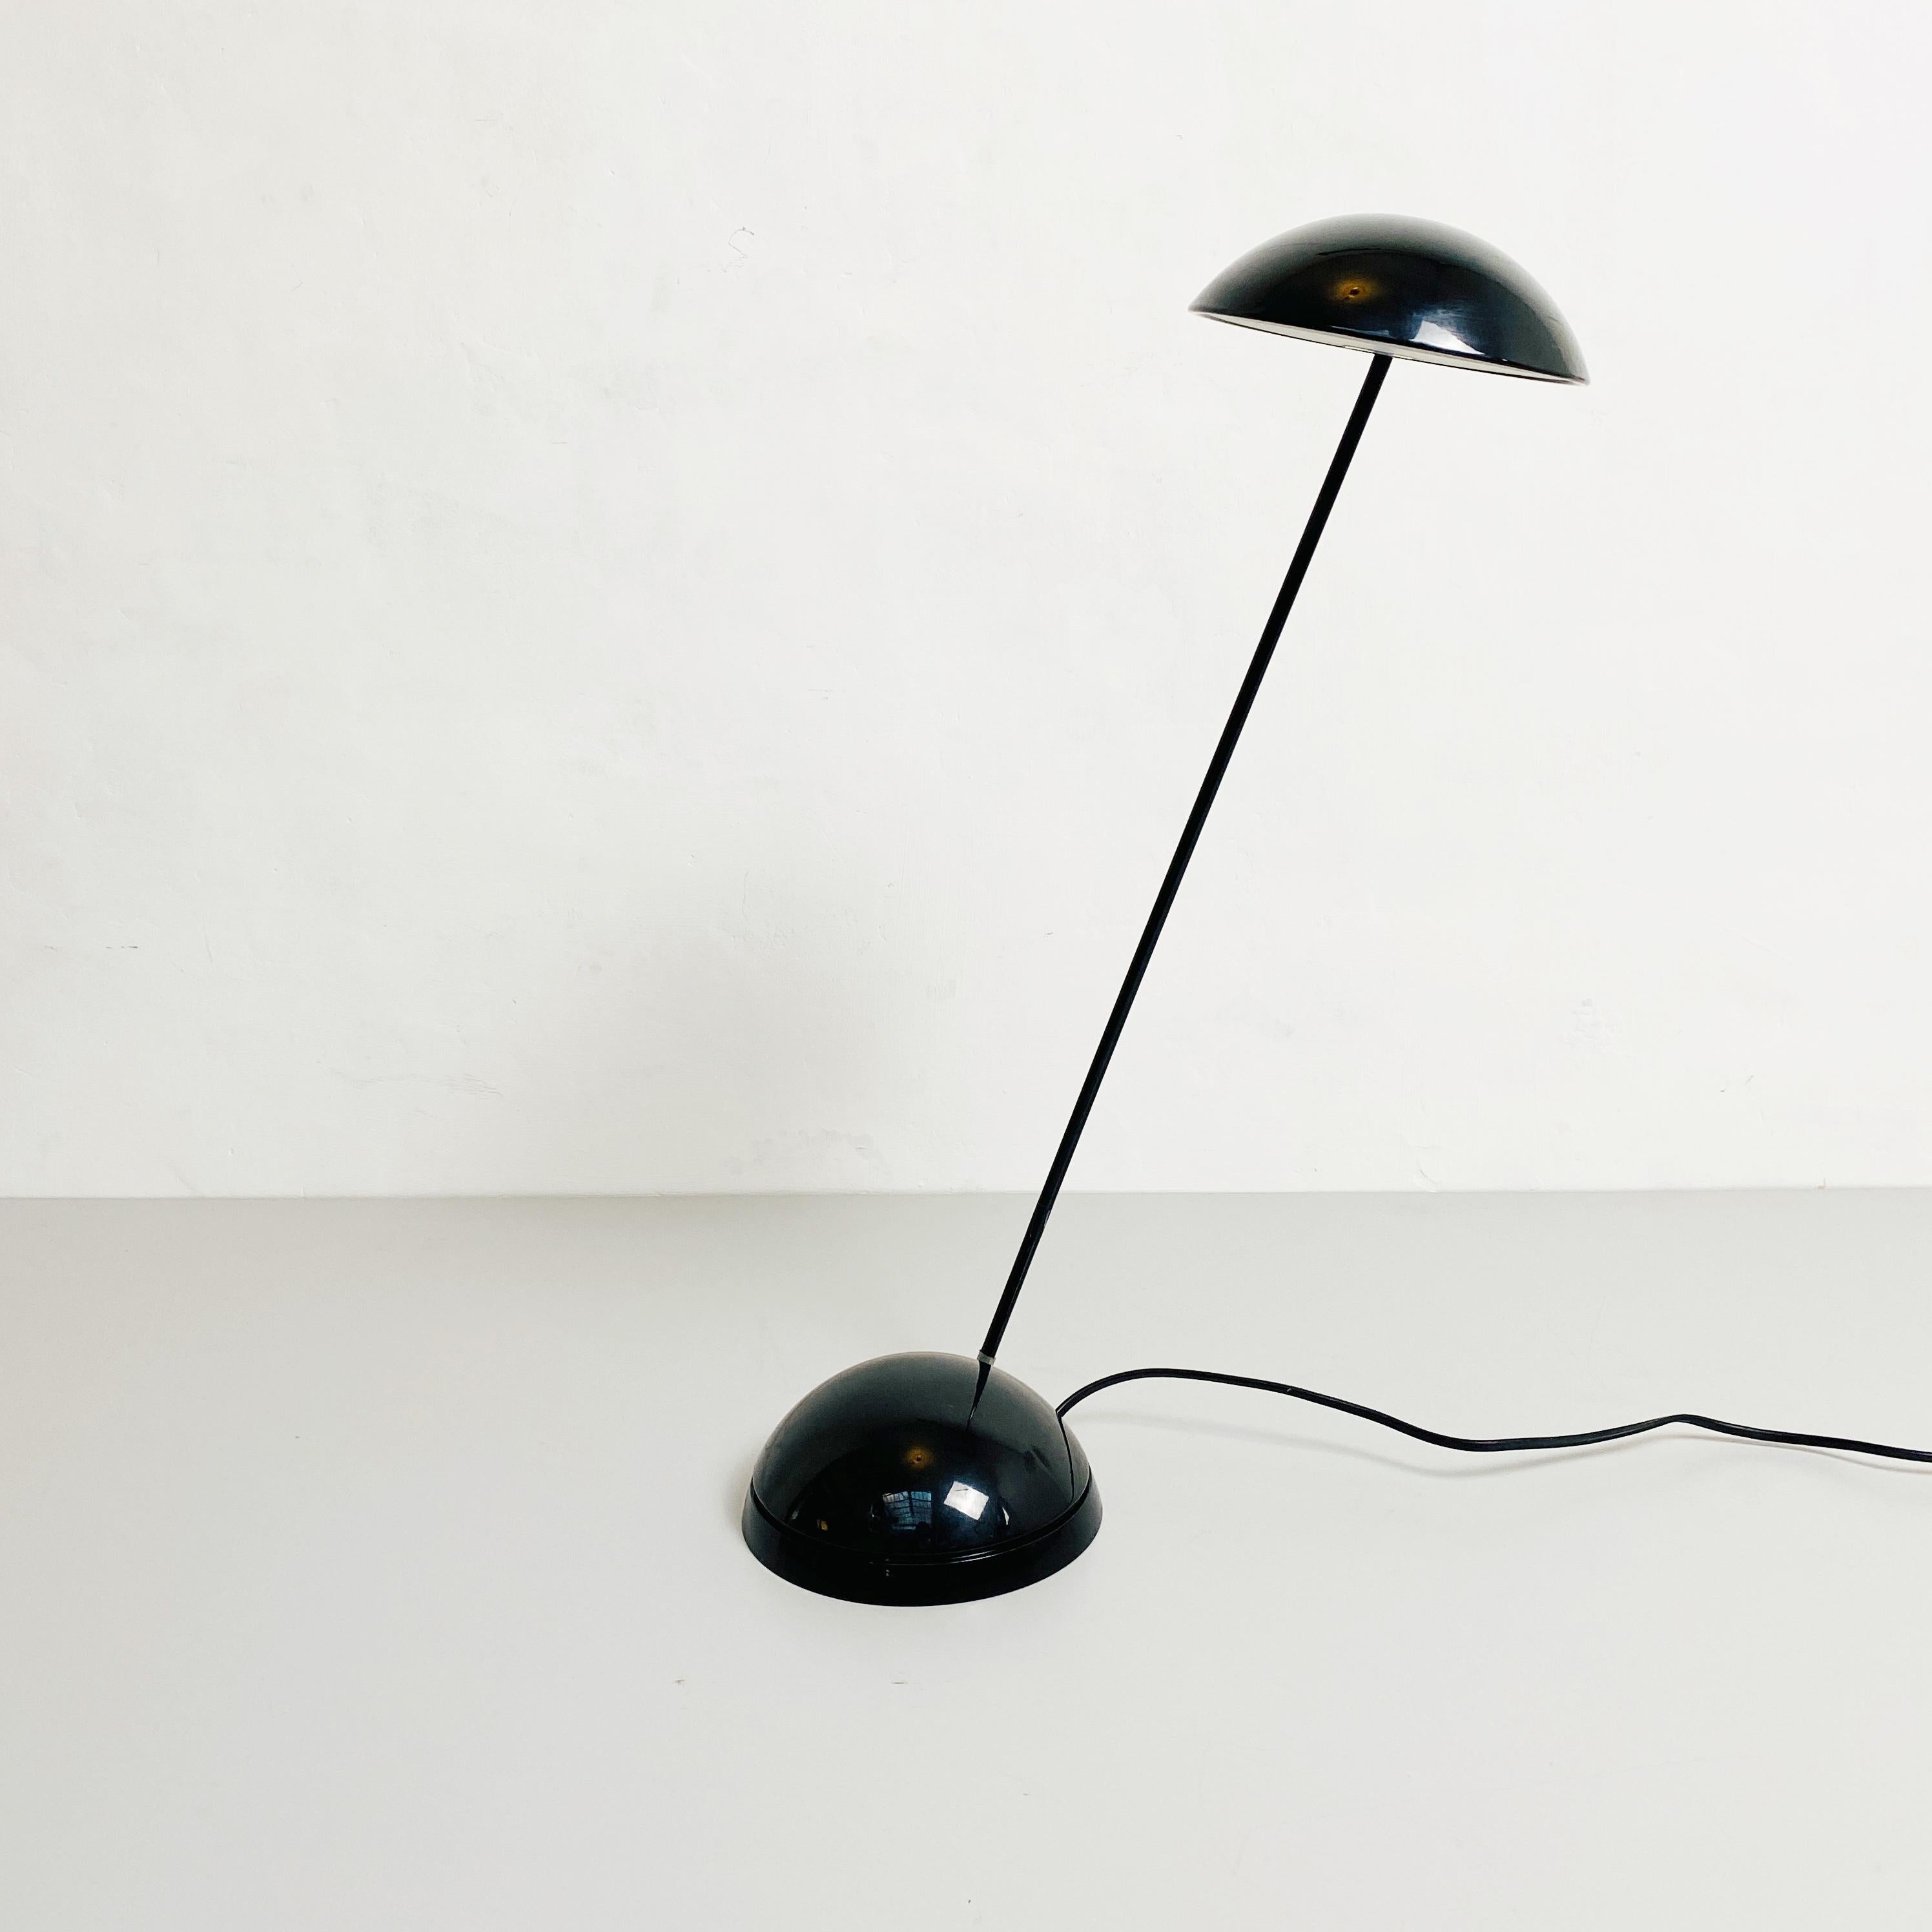 Fin du 20e siècle Lampe de bureau italienne en plastique noir, moderne du milieu du siècle dernier, années 1980